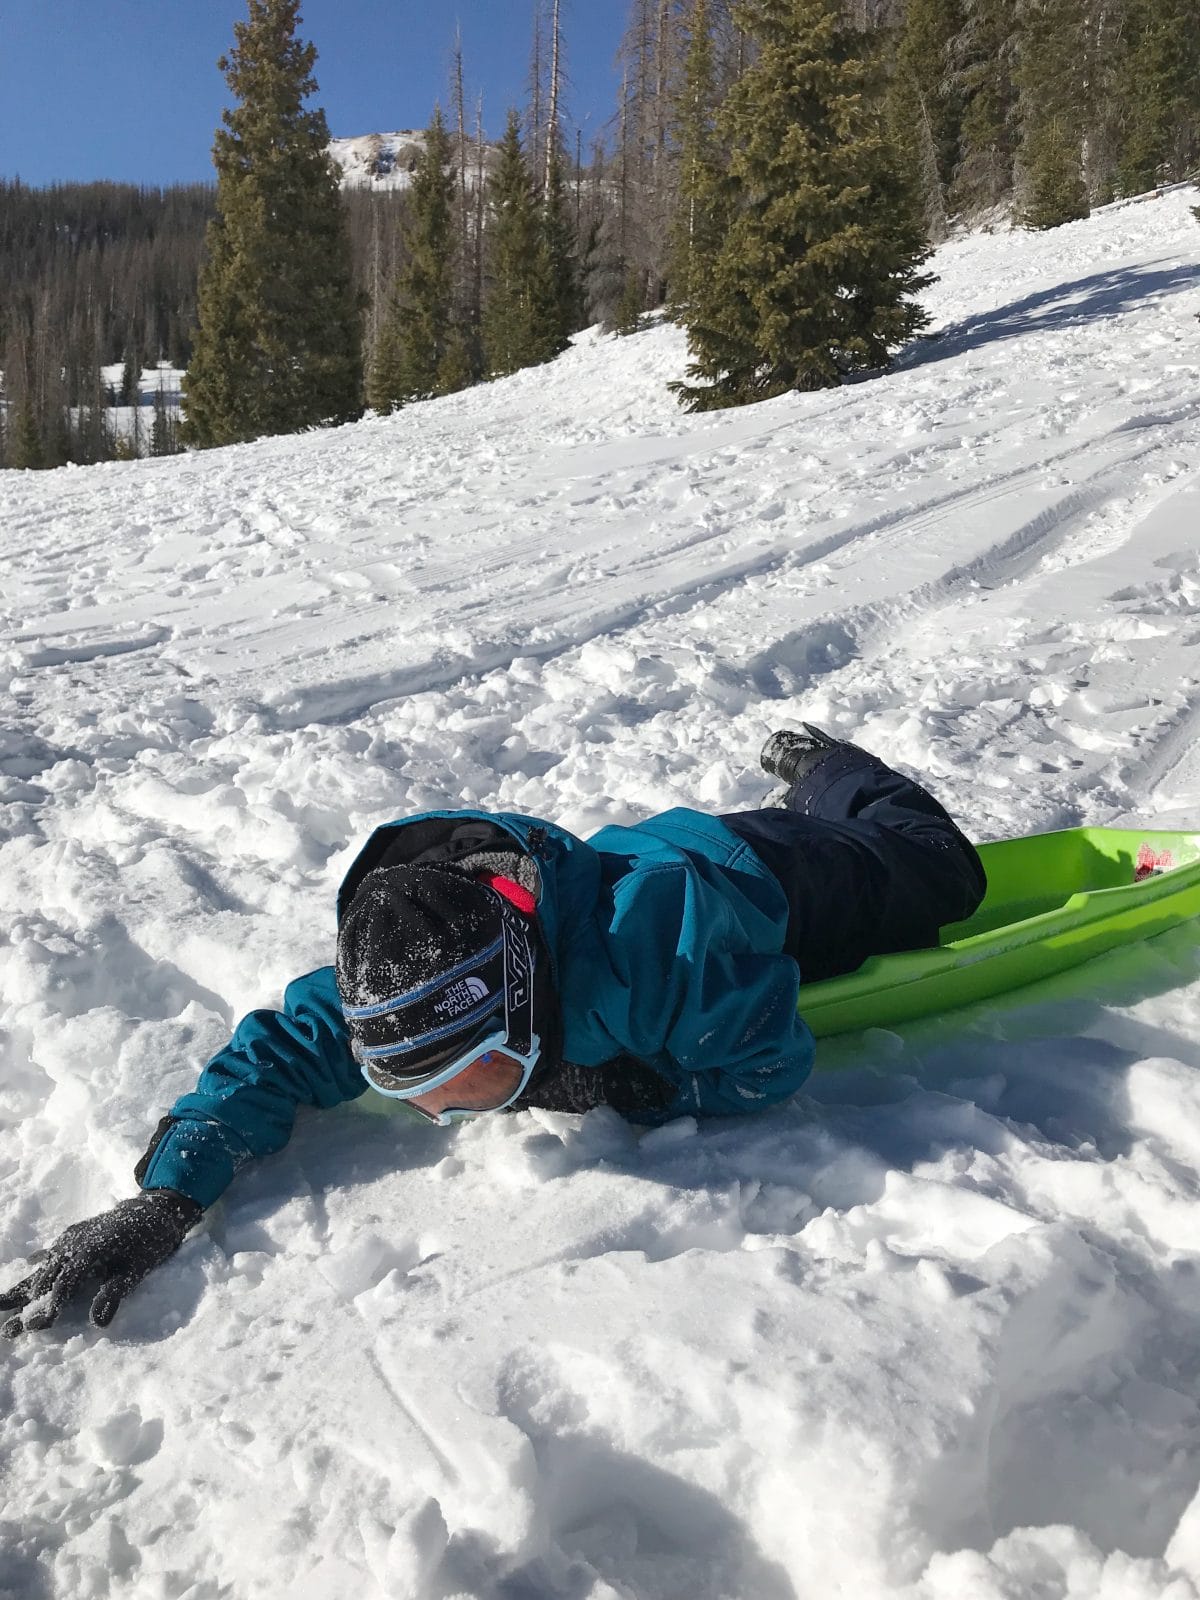 Family ski trip with toddler - sledding 